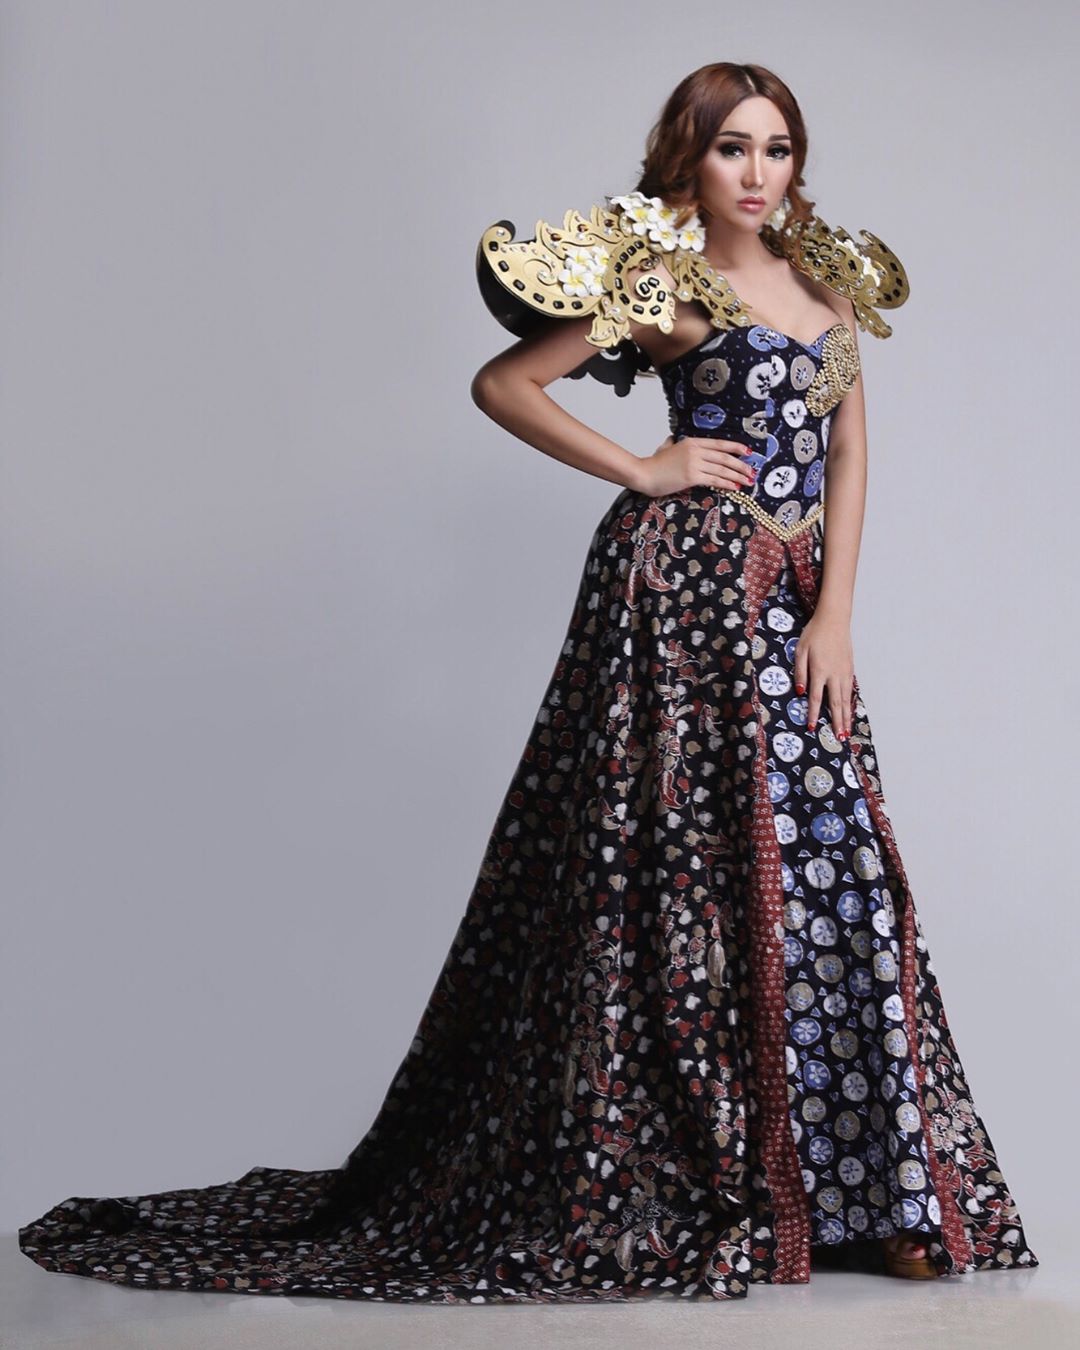 Gaun Batik Cirebon dengan Ekor